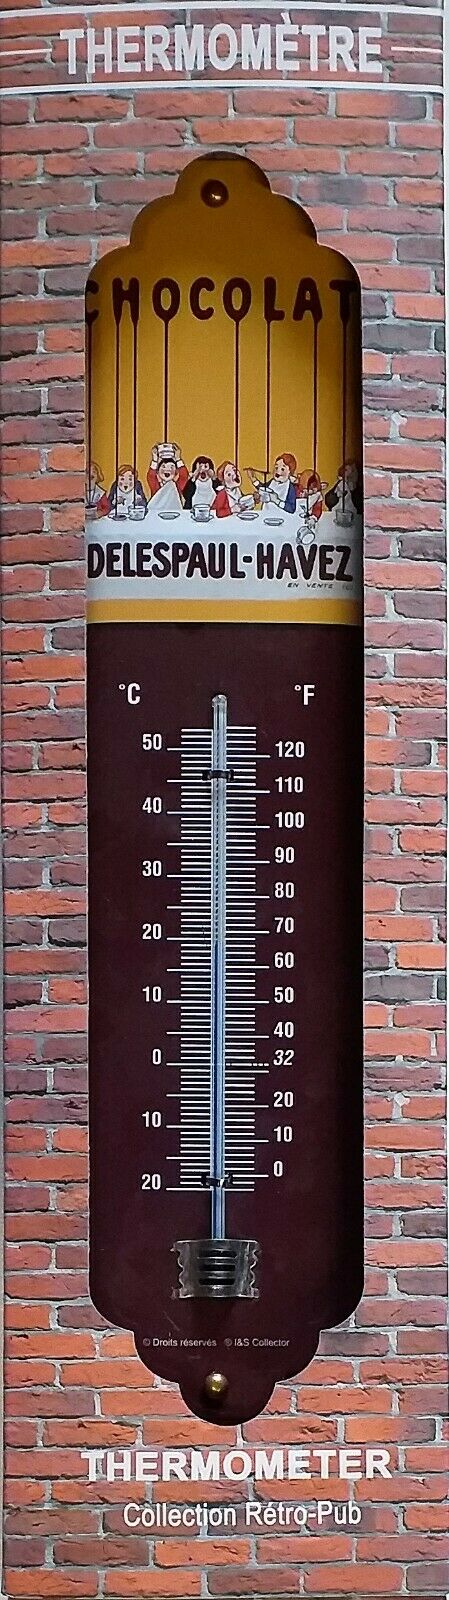 Thermomètre Chocolat Kohler - Déco murale/Thermomètres - decovintage